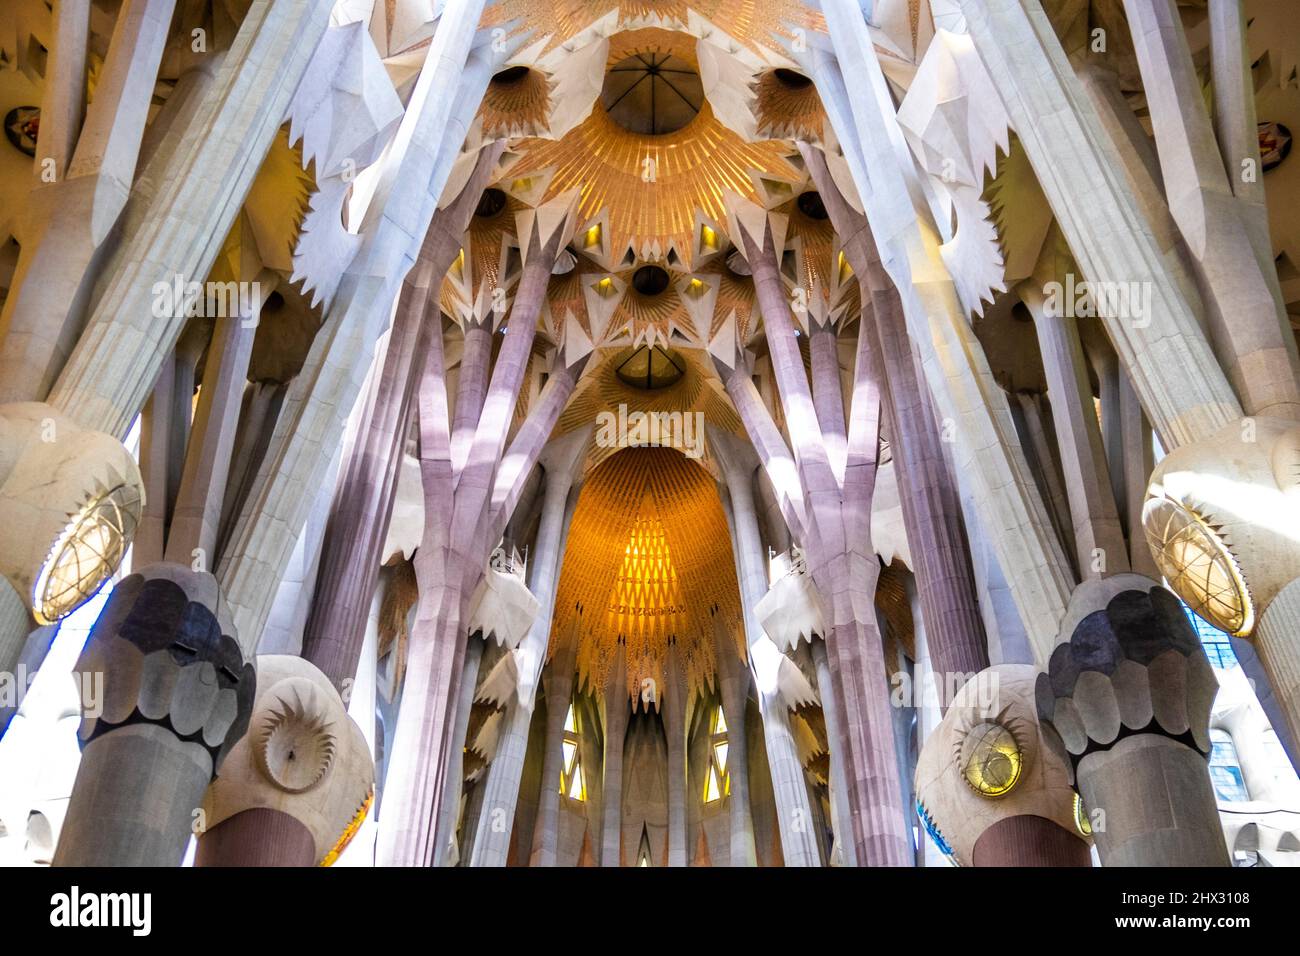 The famous interior of the Sagrada Familia by Antoni Gaudi in Barcelona ...